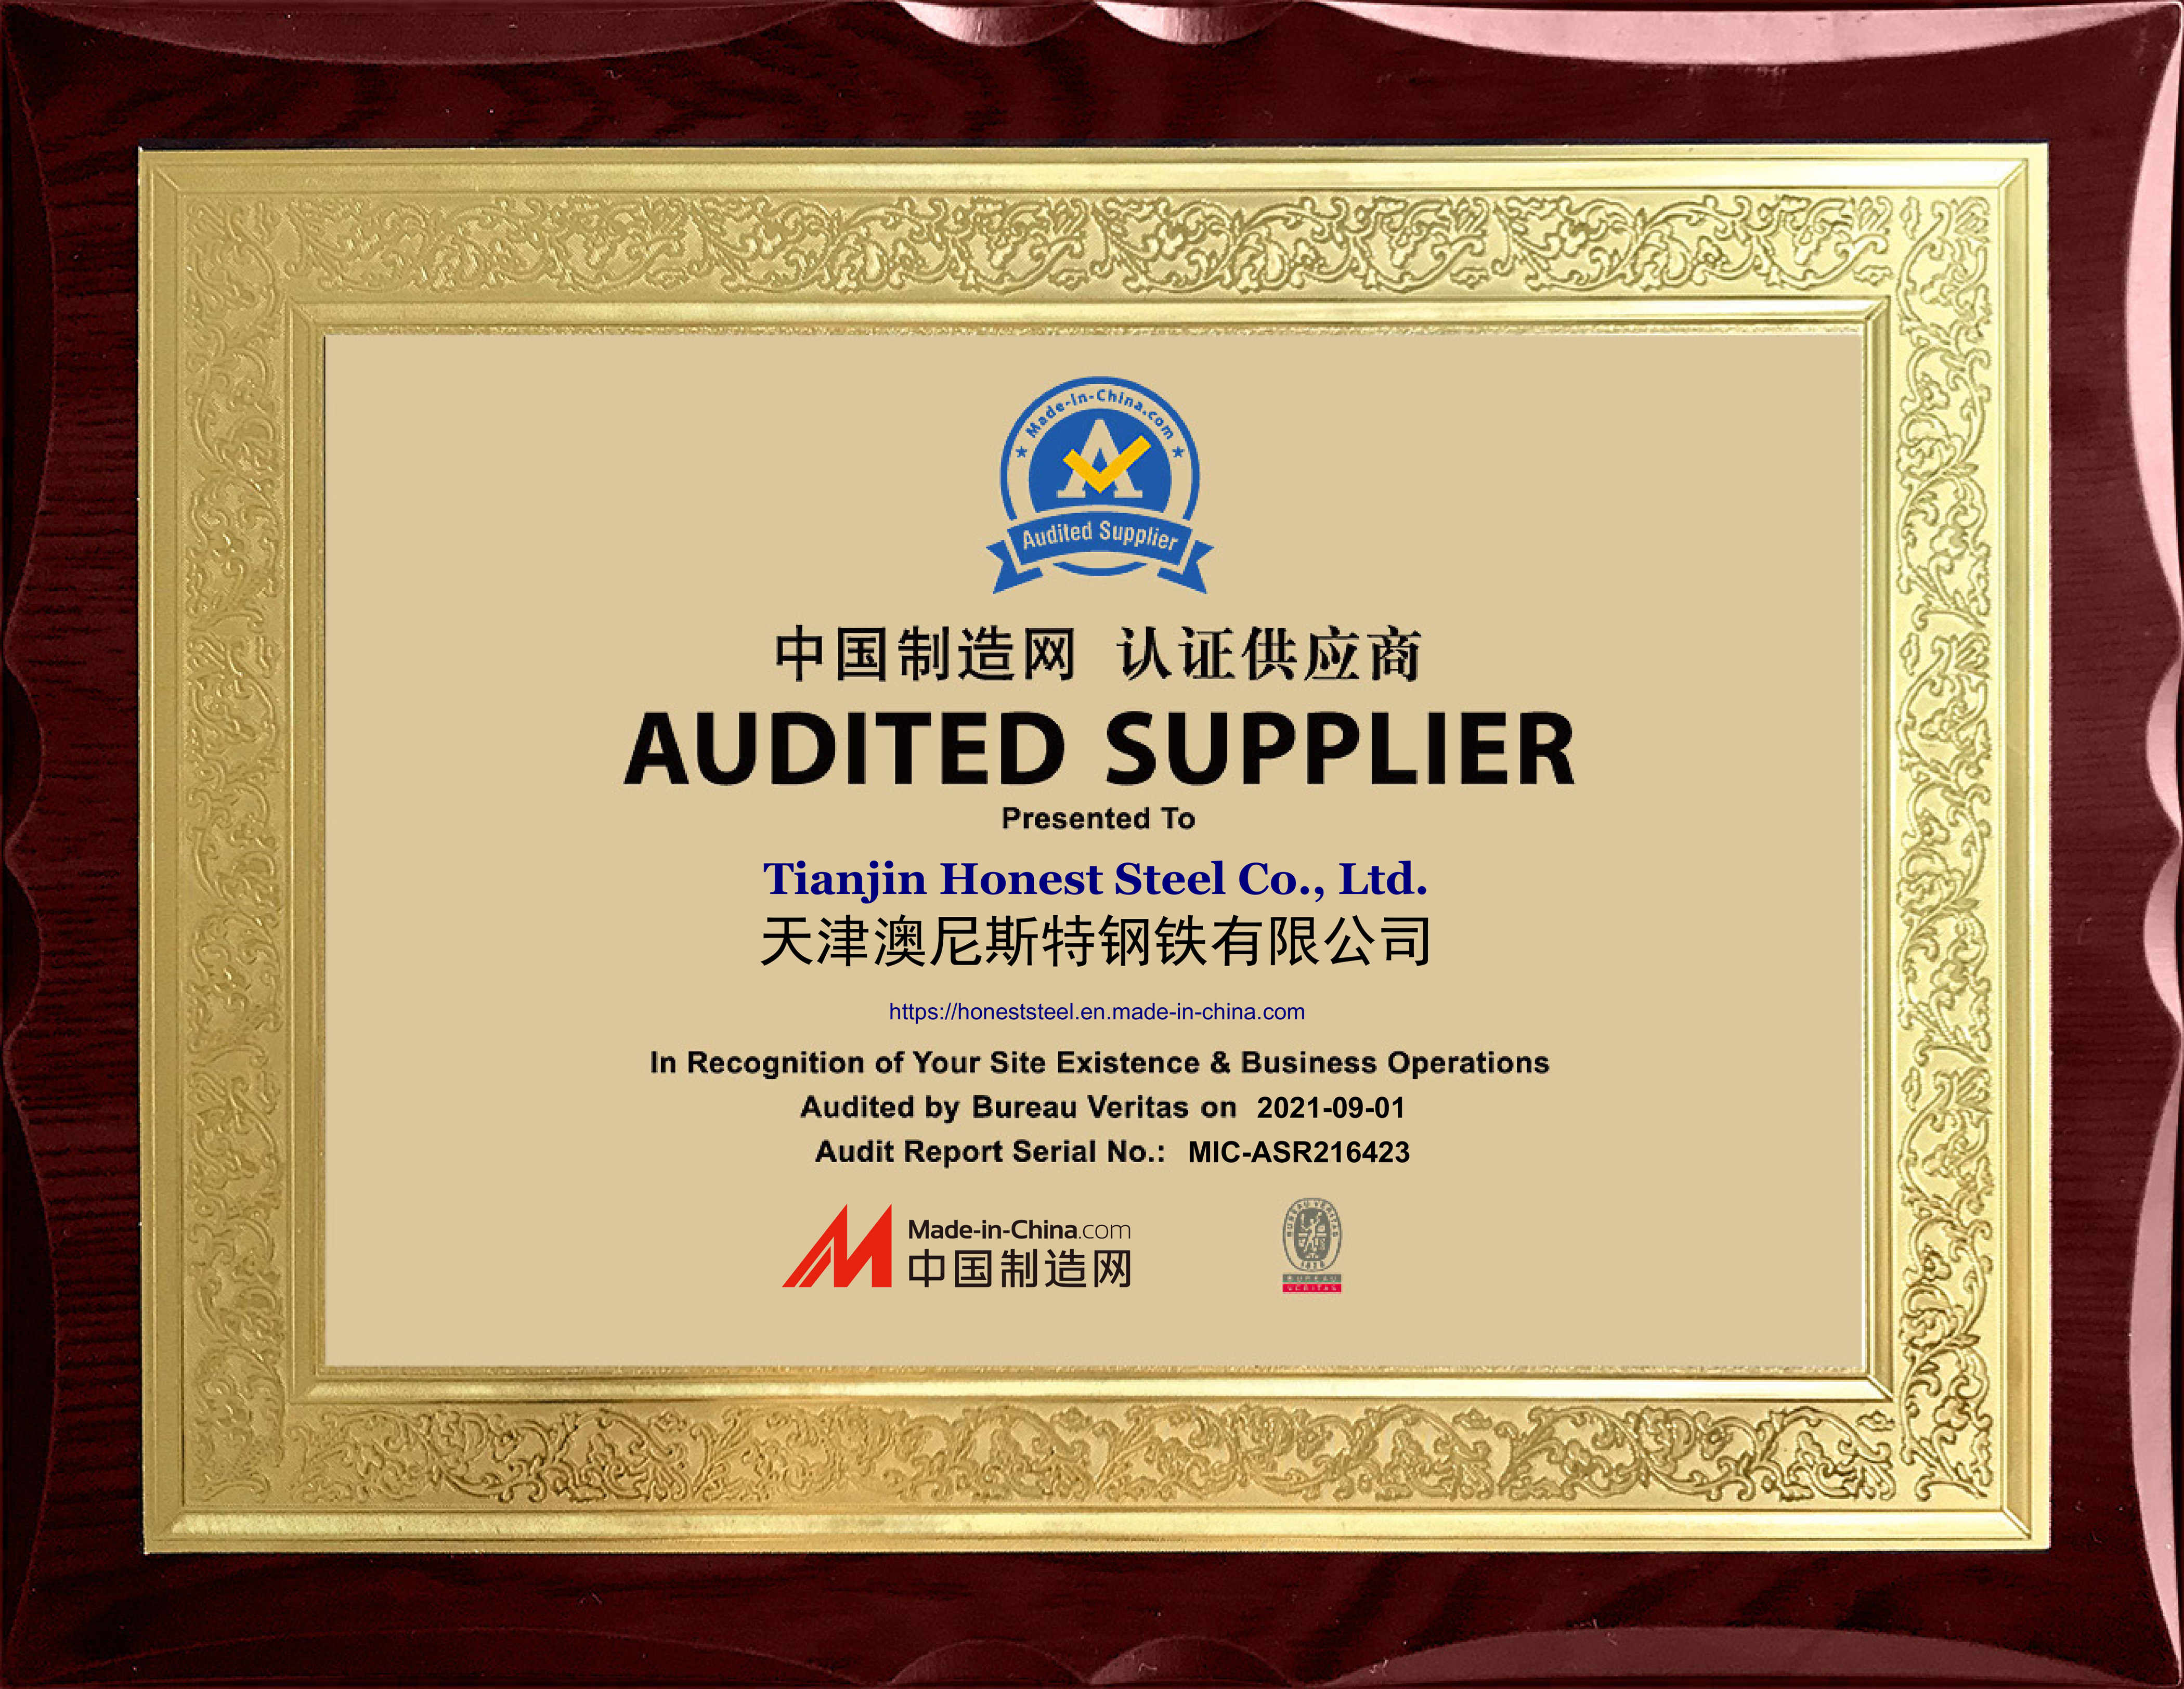 _audited_supplier_1.jpg